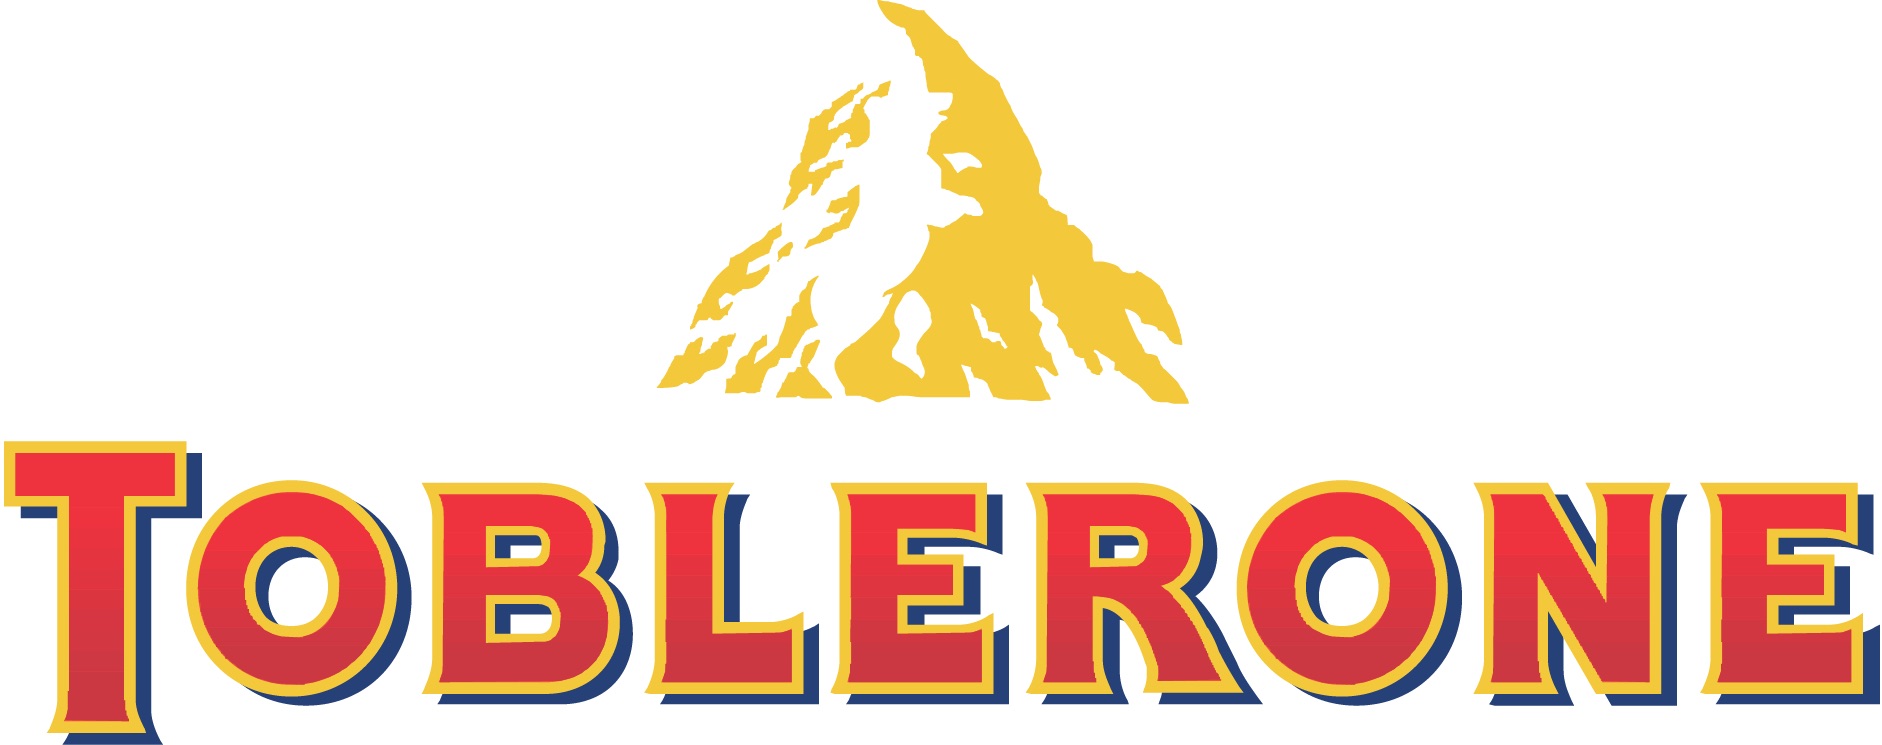 El logo de Toblerone muestra el monte Cervino, uno de los picos más altos de los Alpes suizos, pero éste oculta algo más representativo.